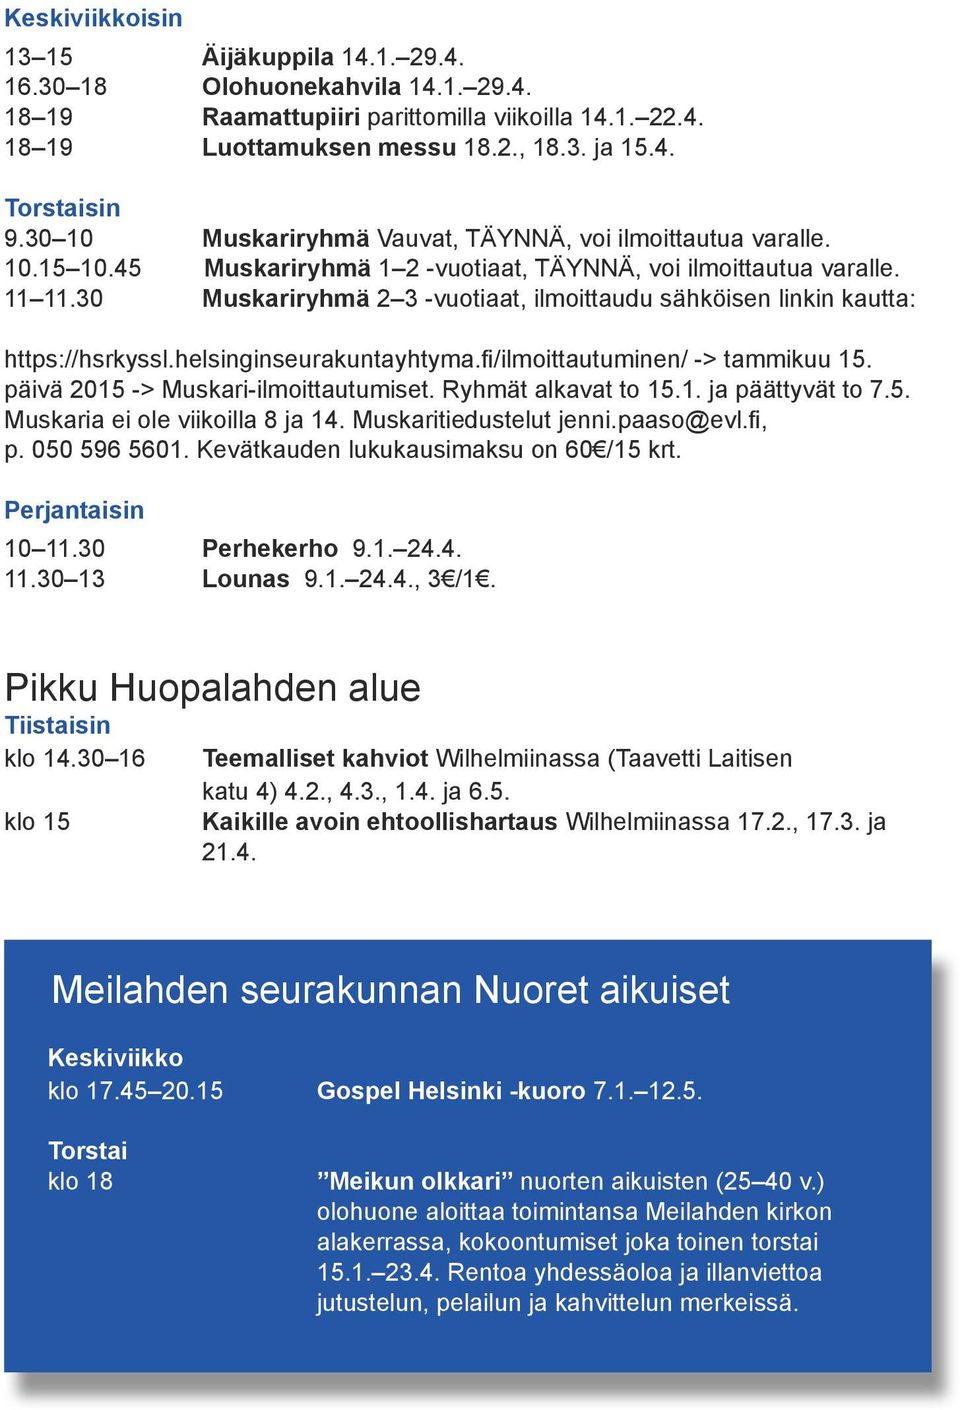 30 Muskariryhmä 2 3 -vuotiaat, ilmoittaudu sähköisen linkin kautta: https://hsrkyssl.helsinginseurakuntayhtyma.fi/ilmoittautuminen/ -> tammikuu 15. päivä 2015 -> Muskari-ilmoittautumiset.